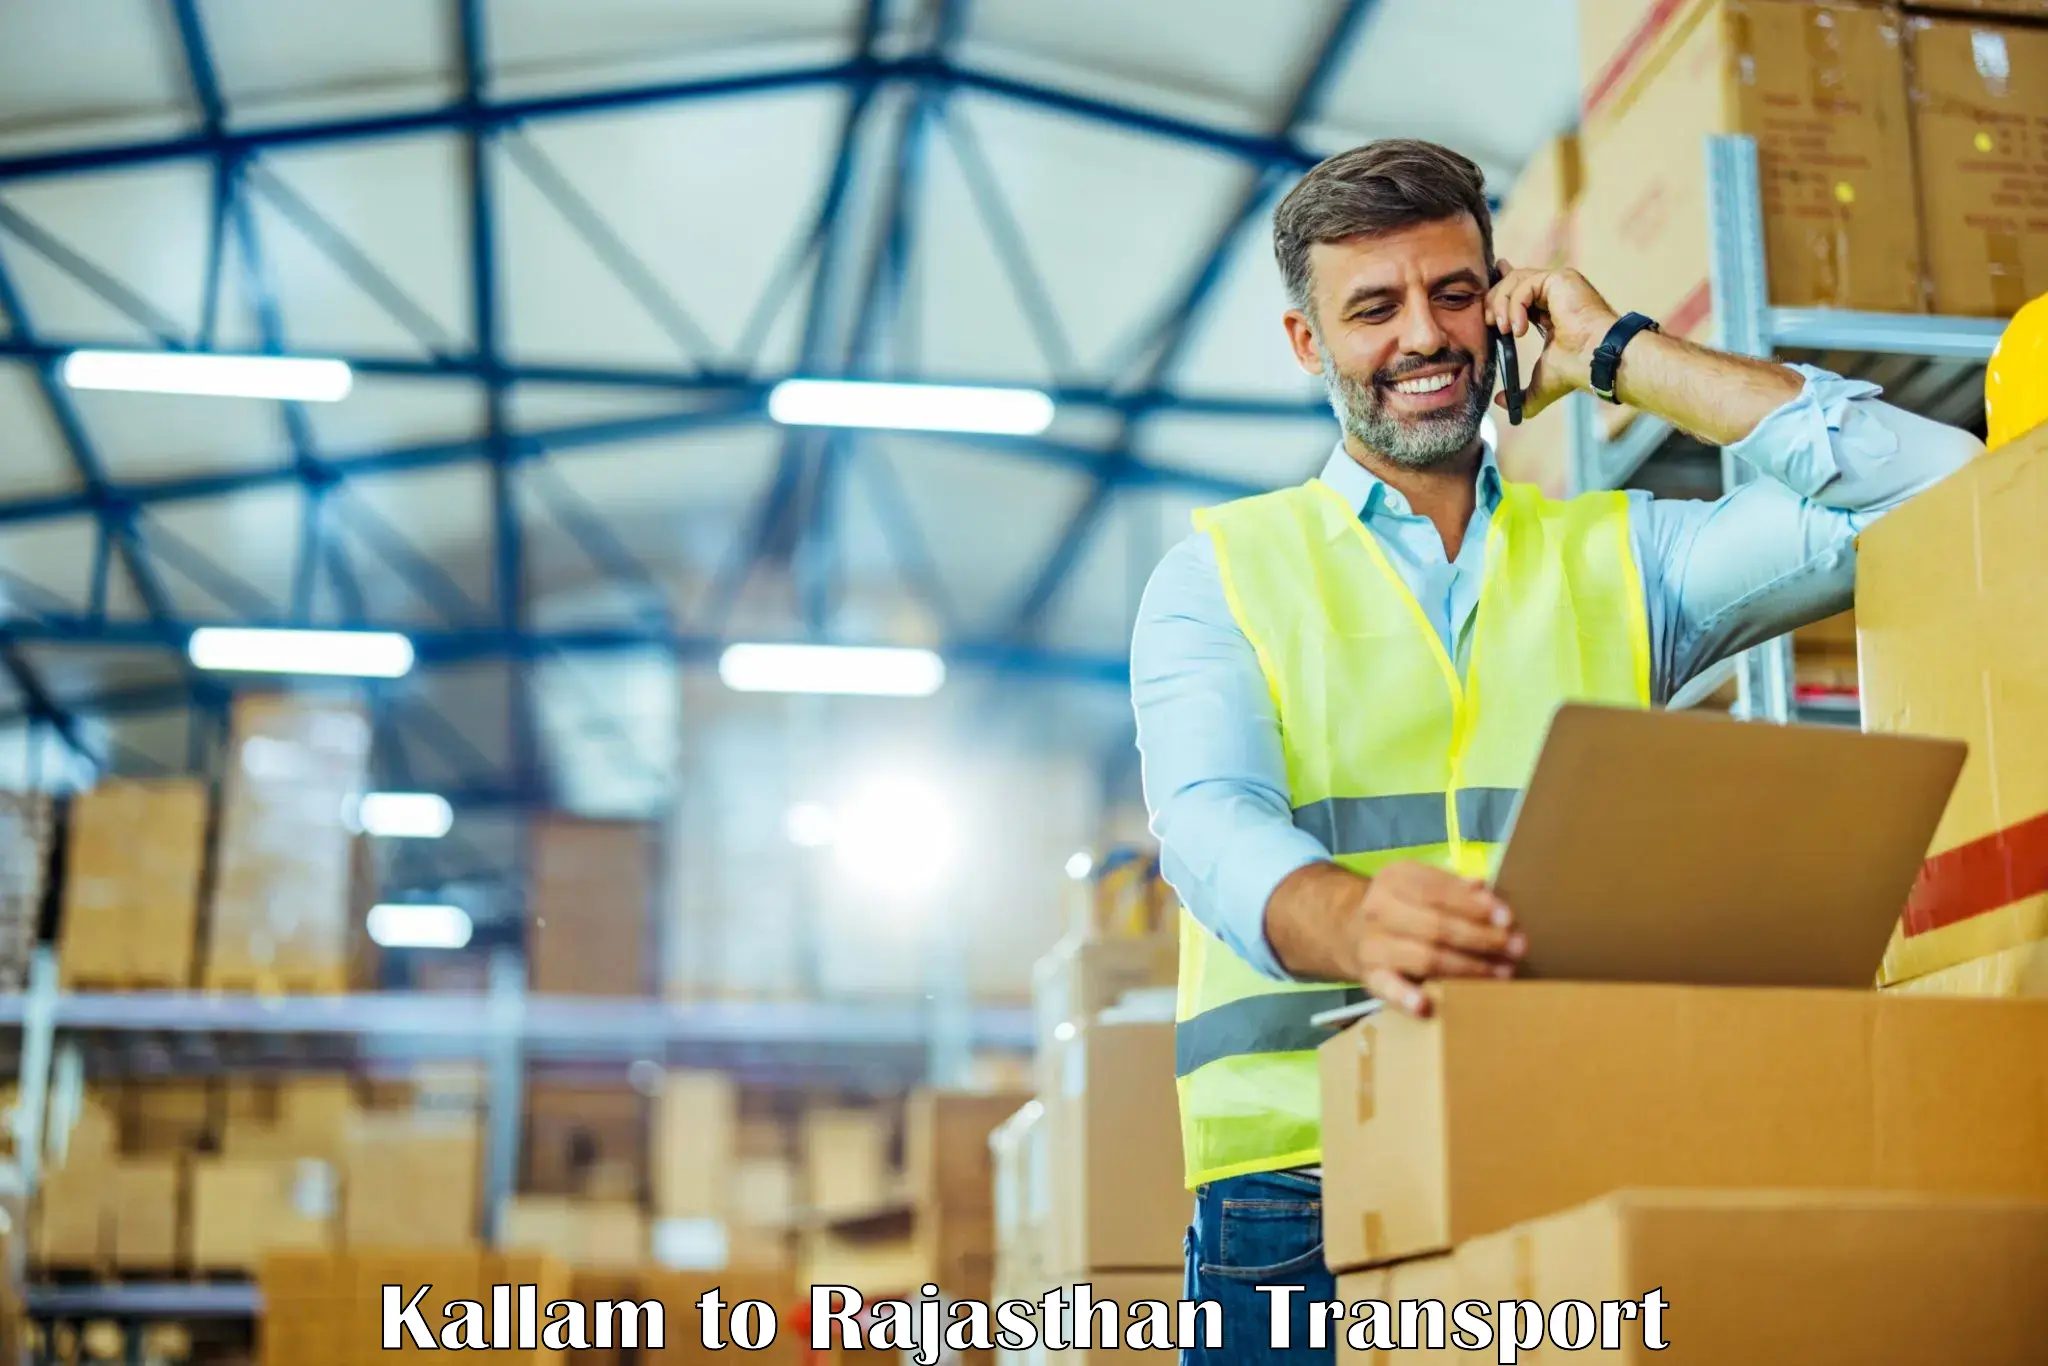 Truck transport companies in India Kallam to Keshoraipatan